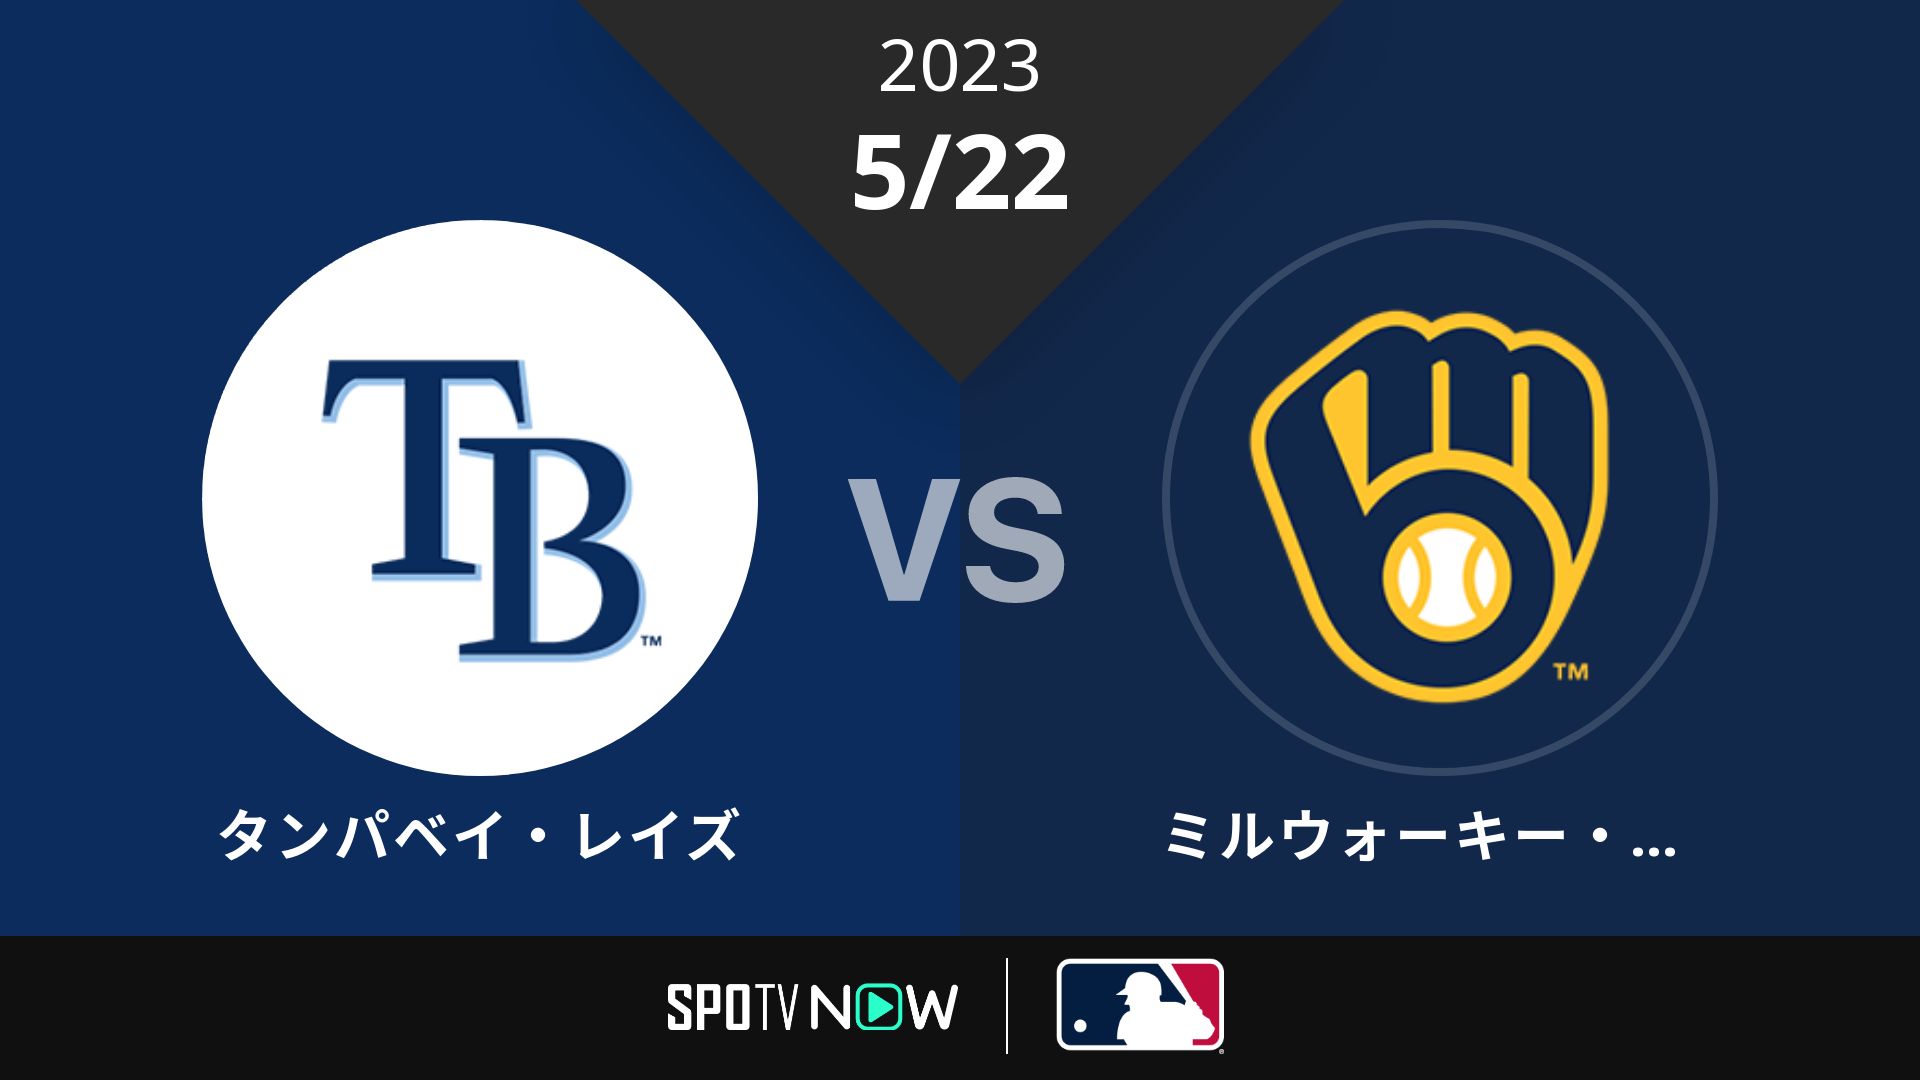 2023/5/22 レイズ vs ブリュワーズ [MLB]